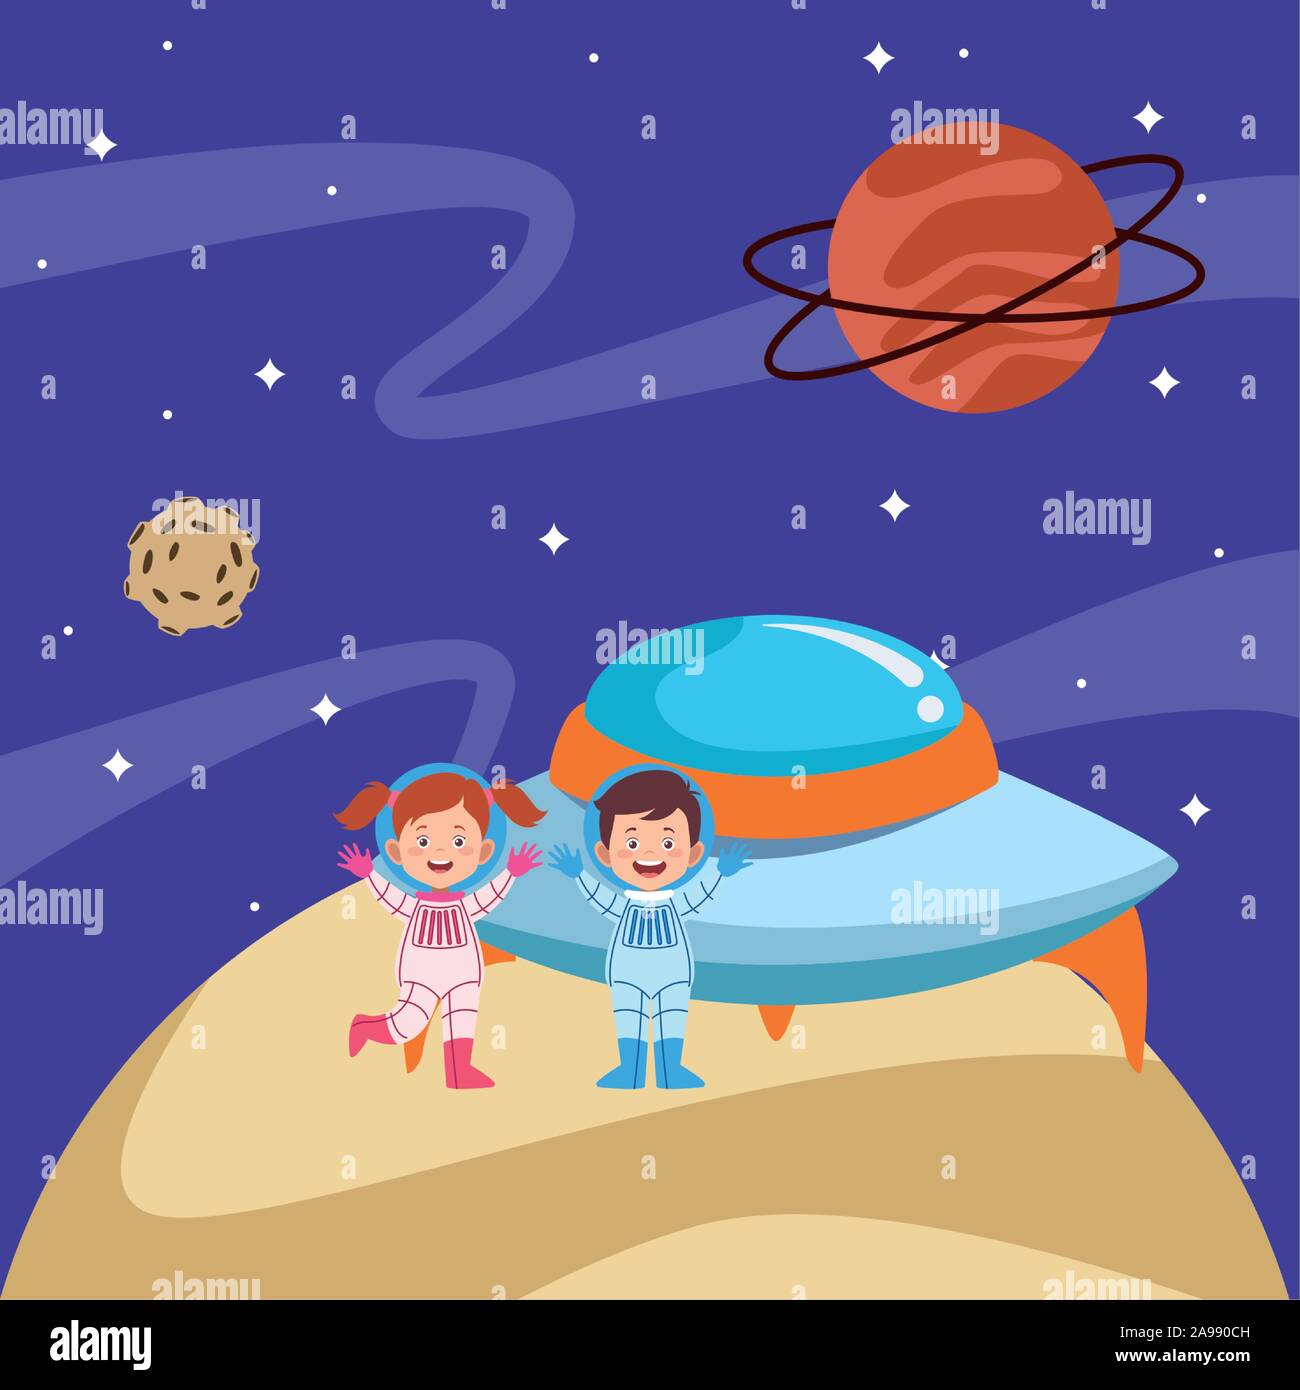 https://c8.alamy.com/compes/2a990ch/dibujos-animados-para-ninos-astronautas-y-plato-volador-en-el-espacio-con-los-planetas-2a990ch.jpg